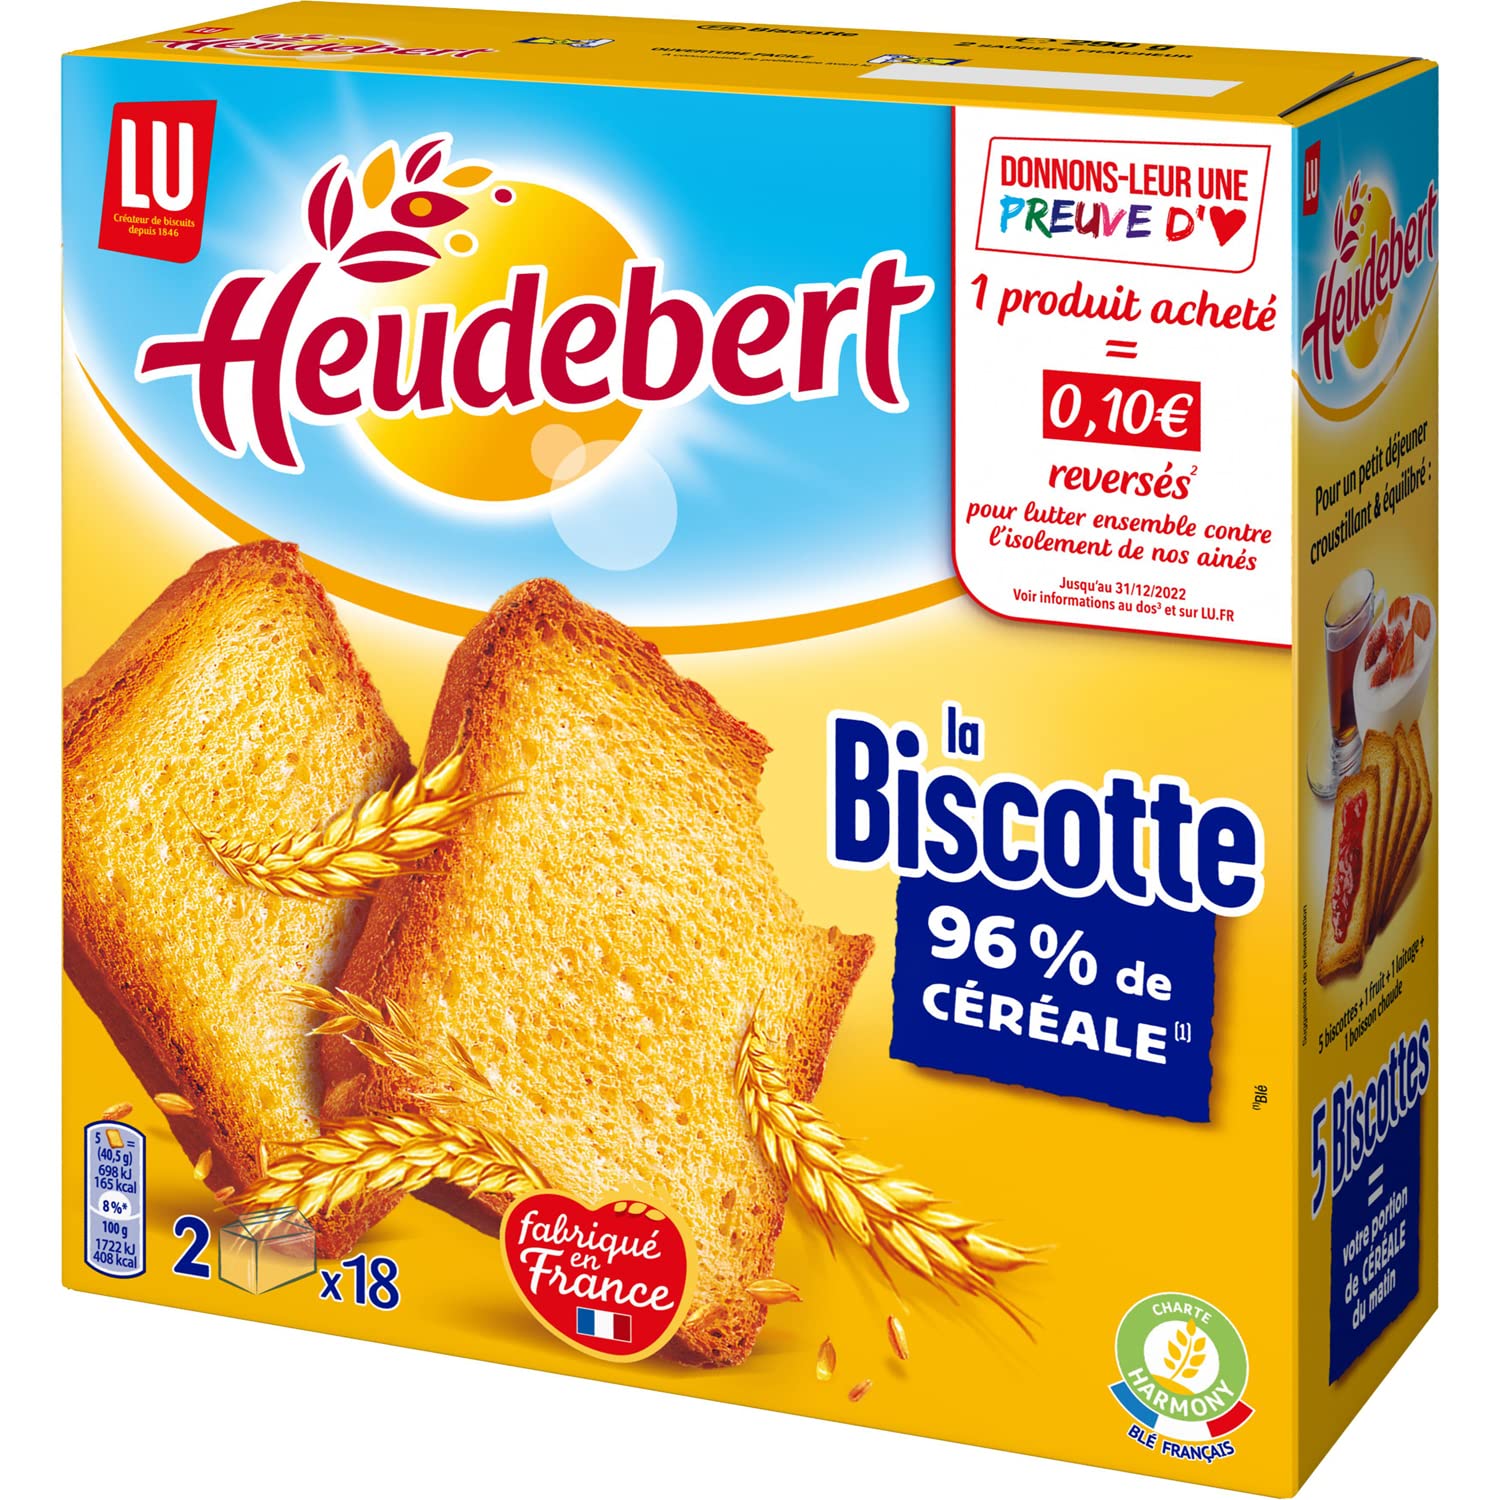 Haute Qualité Heudebert - Biscottes aux Céréales Nature - Idéal pour le Petit-Déjeuner - Lot de 4 Boîtes de 2 Sachets avec 36 Biscottes (290 g) WKHEzIjpW en ligne